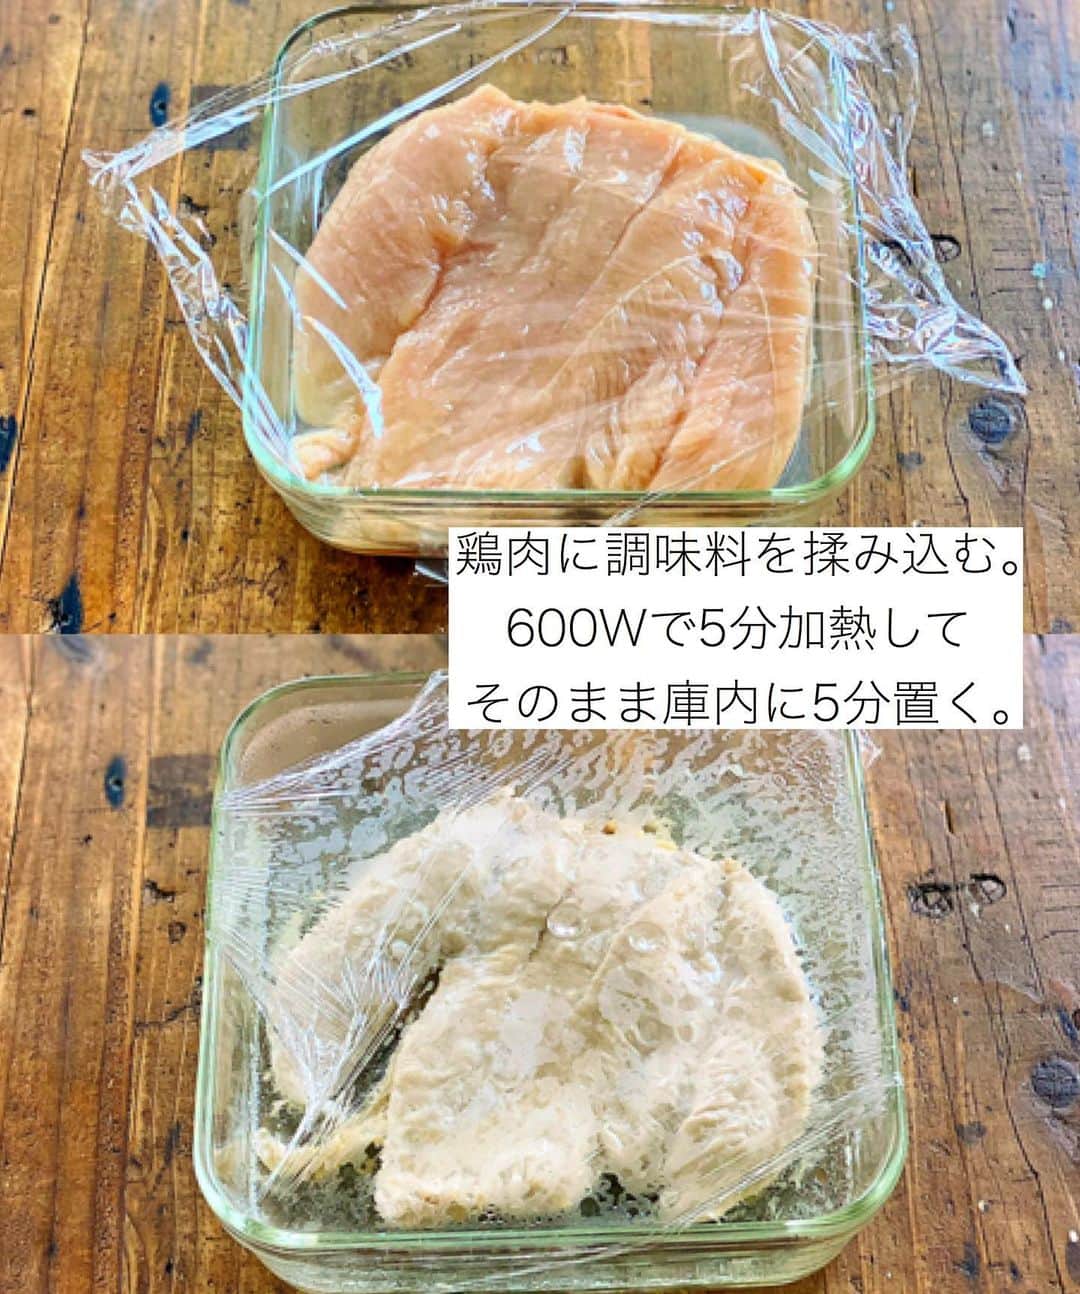 Mizuki【料理ブロガー・簡単レシピ】さんのインスタグラム写真 - (Mizuki【料理ブロガー・簡単レシピ】Instagram)「・﻿ 【レシピ】ーーーーーーーーーーーーー﻿ ♡レンジde簡単！蒸し鶏の香味だれ♡﻿ ーーーーーーーーーーーーーーーーーー﻿ ﻿ ﻿ ﻿ おはようございます(*^^*)﻿ ﻿ 今日は鶏むね肉の節約おかず♩﻿ さっぱりヘルシーなレンジ蒸し鶏に﻿ たっぷり香味だれをかけました♡﻿ 甘酢っぱい香味だれが﻿ 食欲をそそりますよ〜(*´艸`)﻿ ﻿ 蒸し鶏はレンジで一発！﻿ たれは混ぜるだけ！でできるので﻿ よかったらお試し下さいね〜(*^^*)﻿ ﻿ ﻿ ﻿ ーーーーーーーーーーーーーーーーーーーー﻿ 【2人分】﻿ 鶏むね肉...大1枚(300g)﻿ ●砂糖...小1/2﻿ ●塩...小1/4﻿ ●酒...大1﻿ ☆長ねぎ(みじん切り)...10cm﻿ ☆生姜(みじん切り)...1/3かけ﻿ ☆醤油・酢・ごま...各大1.5﻿ ☆砂糖・ごま油...各大1/2﻿ レタス・トマト...各適量﻿ ﻿ 1.鶏肉は身の厚い部分を開いて全体をフォークで刺し、耐熱皿に入れて●を上から順番に揉み込む。ふんわりラップして600Wのレンジで5分加熱し、そのまま庫内に5分置く。﻿ 2.☆を合わせて香味だれを作る。﻿ 3.1の粗熱が取れたら食べやすく切る。ちぎったレタス、くし切りにしたトマトと盛り合わせ、2をかける。﻿ ーーーーーーーーーーーーーーーーーーーー﻿ ﻿ ﻿ ﻿ 《ポイント》﻿ ♦︎鶏肉は厚みが均等になるように開いて下さい♩﻿ ♦︎蒸し鶏は粗熱が取れるまで置いておくとしっとりします♩完全に冷ましても◎﻿ ﻿ ﻿ ﻿ ﻿ ﻿ ﻿ ﻿ ＿＿＿＿＿＿＿＿＿＿＿＿＿＿＿＿＿﻿ 🎀6刷重版しました🎀﻿ 混ぜて焼くだけ。はじめてでも失敗しない！﻿ 【#ホットケーキミックスのお菓子 】﻿ ﻿ 一冊まるっとホケミスイーツ♩﻿ 普段のおやつから﻿ 特別な日にも使えるレシピを﻿ この一冊に詰め込みました(*^^*)﻿ ホットケーキミックスを使えば﻿ 簡単に本格的なお菓子が作れますよ♡﻿ ＿＿＿＿＿＿＿＿＿＿＿＿＿＿＿＿＿﻿ ﻿ ﻿ ﻿ ＿＿＿＿＿＿＿＿＿＿＿＿＿＿＿＿＿＿＿﻿ 📕6刷重版しました📕﻿ 簡単・時短！ 毎日のごはんがラクになる﻿ ✨🦋 【 #Mizukiの今どき和食 】🦋✨﻿ ＿＿＿＿＿＿＿＿＿＿＿＿＿＿＿＿＿＿＿﻿ なるべく少ない材料で﻿ 手間も時間も省きながら﻿ 簡単にできるおいしい和食レシピ♩﻿ 簡単に失敗なくマスターできる一冊で﻿ もっと気軽に、カジュアルに﻿ 和食を楽しんで下さいね(*^^*)﻿ ＿＿＿＿＿＿＿＿＿＿＿＿＿＿＿＿＿＿＿﻿ ﻿ ⭐️ストーリー、ハイライト、プロフ画面に﻿ 本のURLを貼らせていただいております♩﻿ →(@mizuki_31cafe )﻿ ﻿ ﻿ ﻿ ﻿ ﻿ #鶏むね肉#香味だれ#レンジ#さっぱり#ヘルシー#Mizuki#簡単レシピ#時短レシピ#節約レシピ#料理#レシピ#フーディーテーブル#マカロニメイト#おうちごはん#デリスタグラマー#料理好きな人と繋がりたい#おうちごはんlover#写真好きな人と繋がりたい#foodpic#cooking#recipe#lin_stagrammer#foodporn#yummy#蒸し鶏の香味だれm」8月6日 7時12分 - mizuki_31cafe